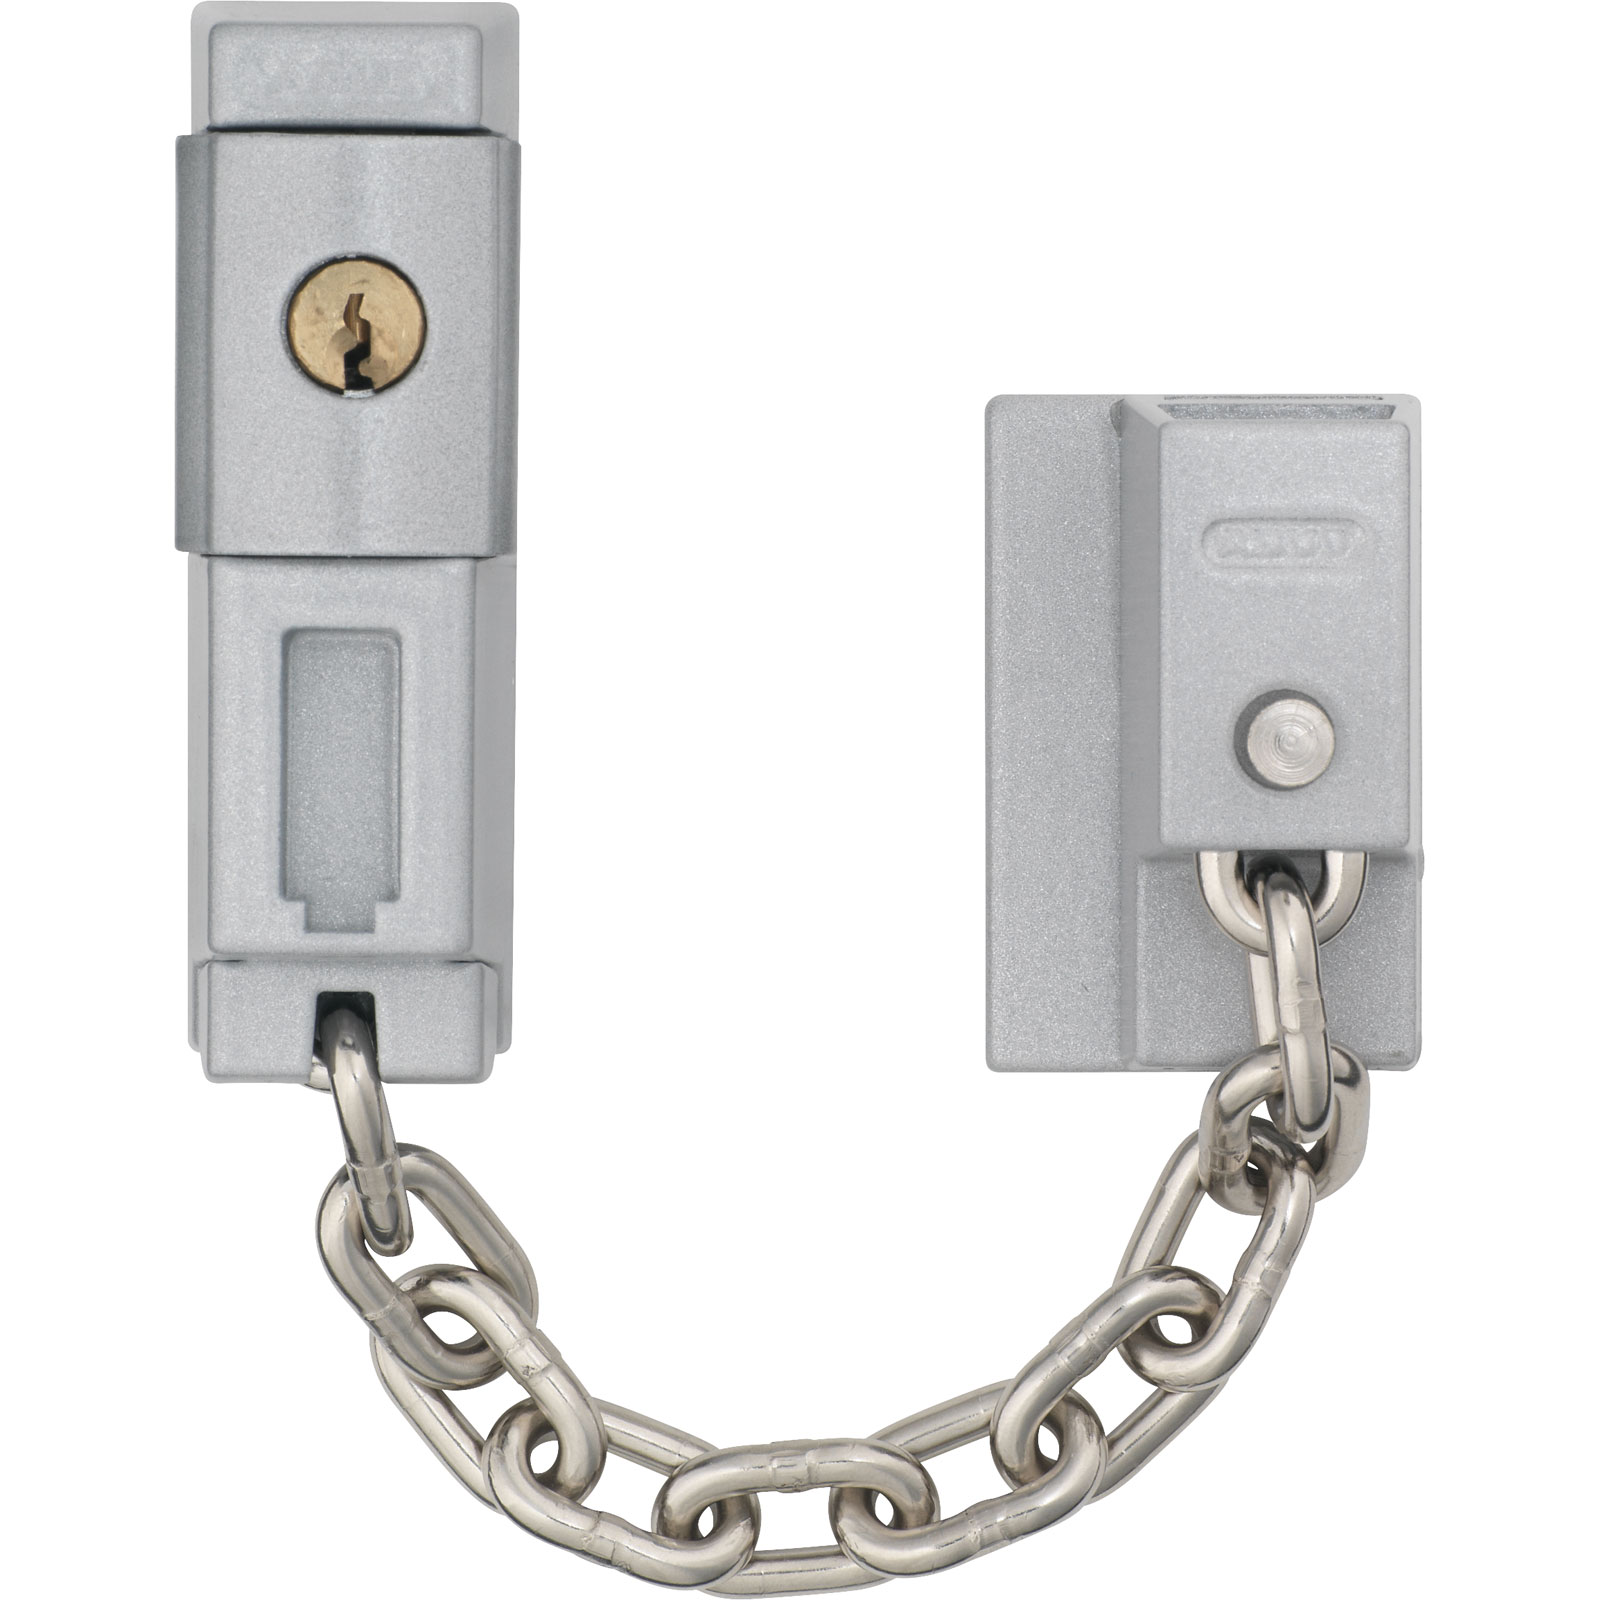 Door chain, SK78, Additional security for front doors